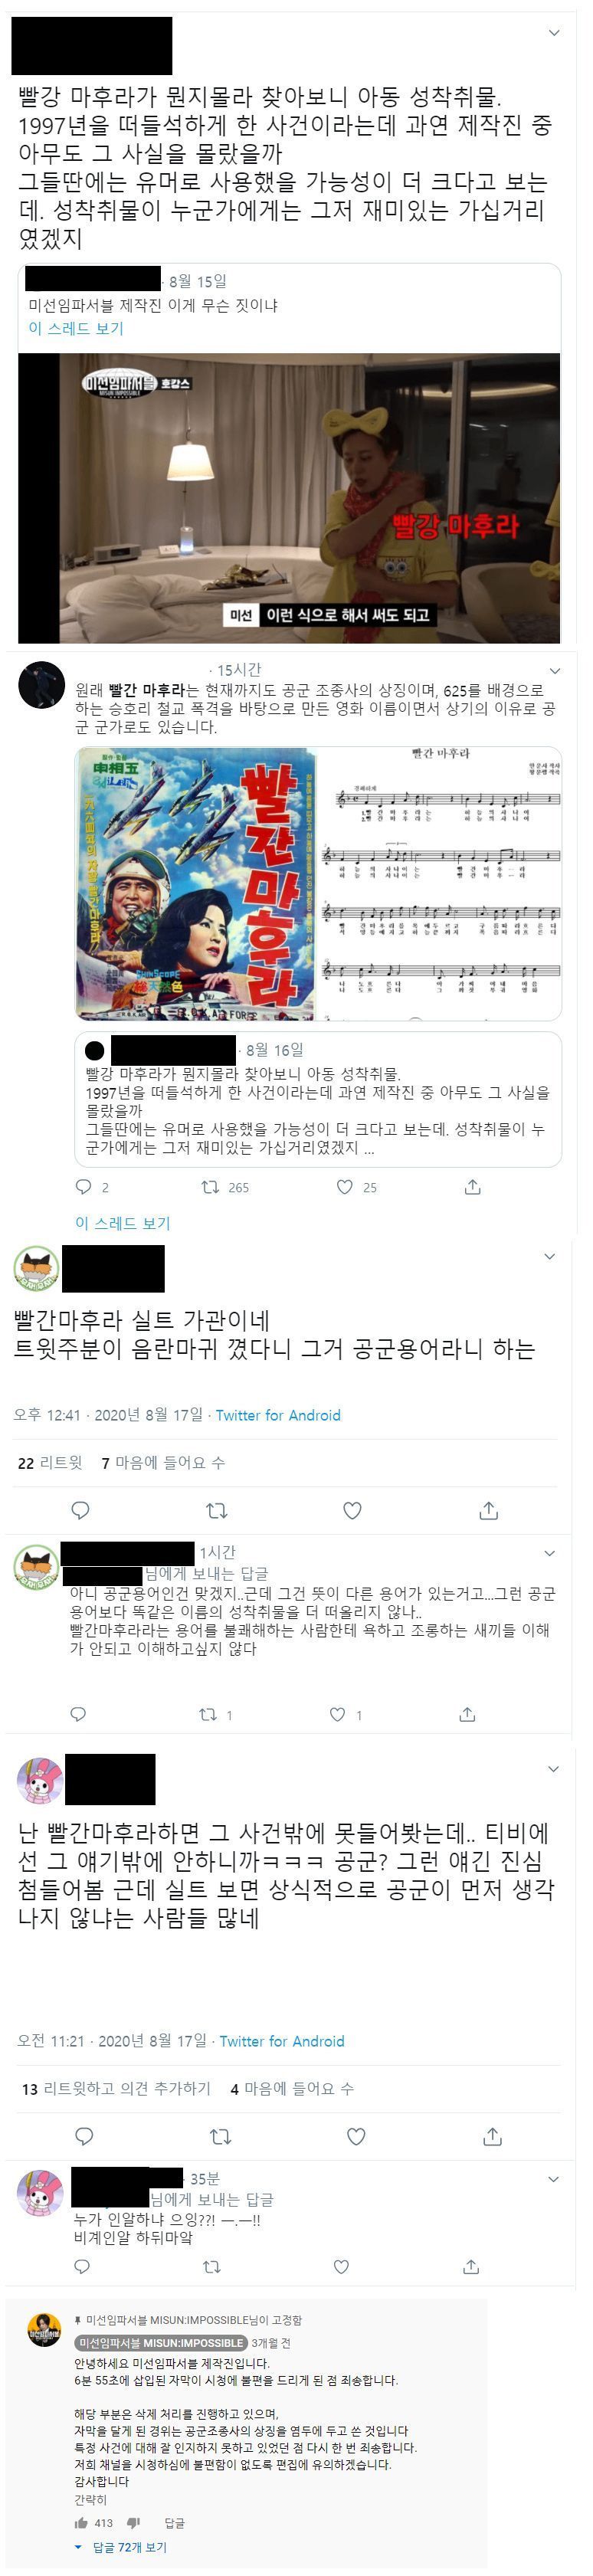 논란이 되었던 박미선 미션 임파서블 방송.JPG